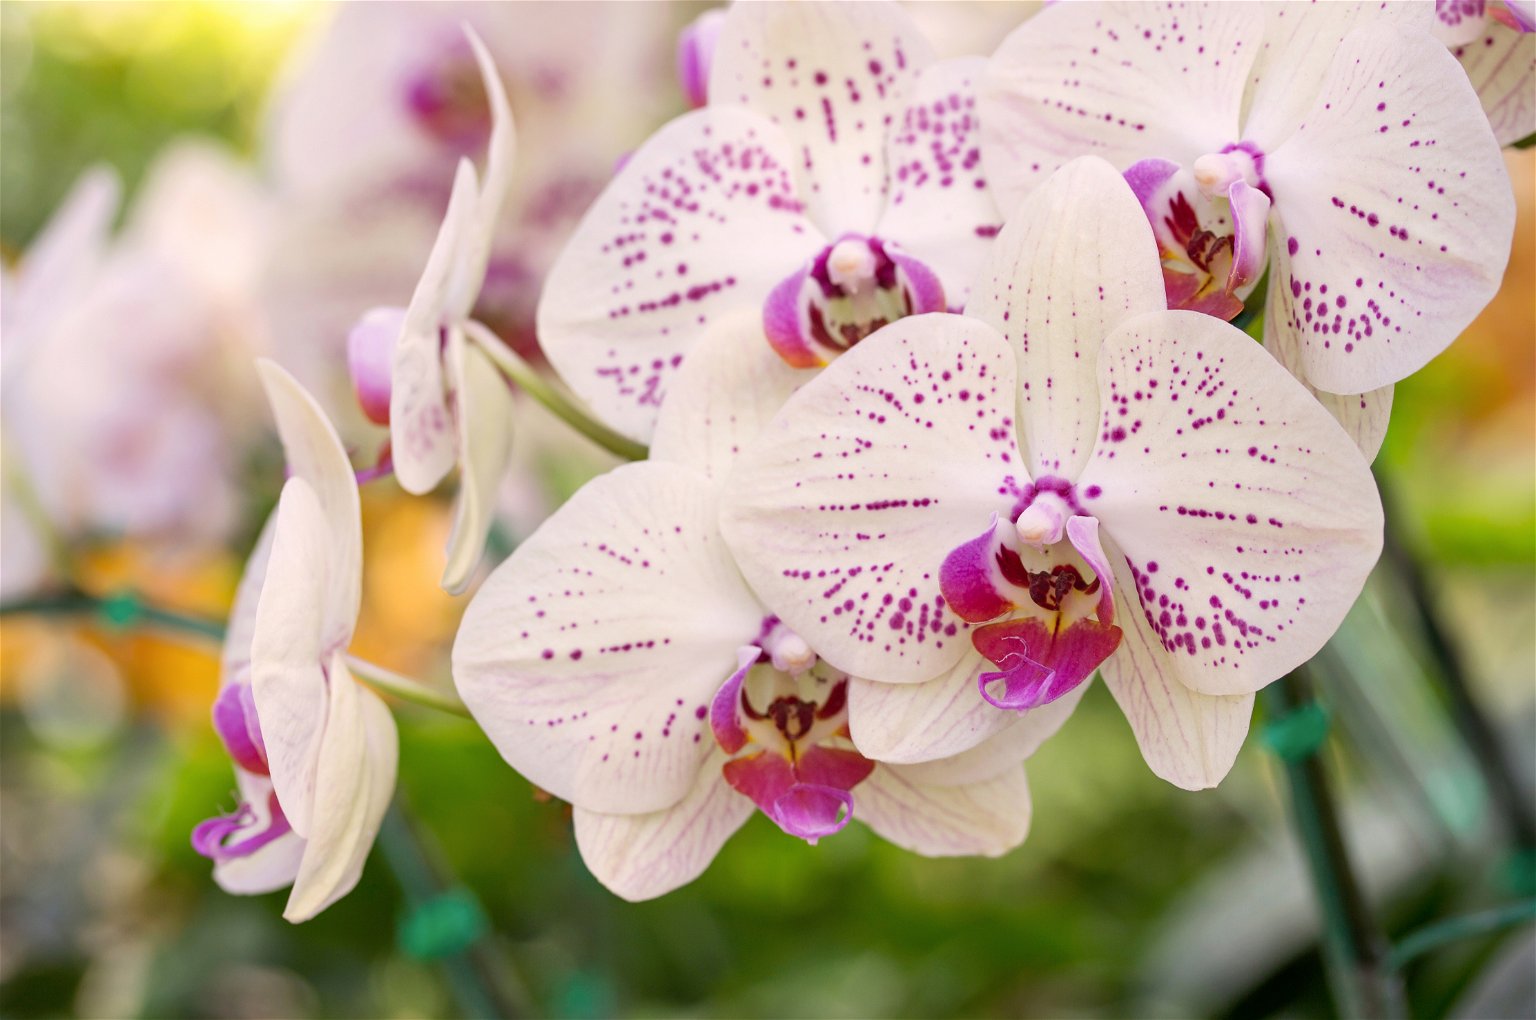 Gausiai žydinčių orchidėjų paslaptis slypi specialiuose vazonuose